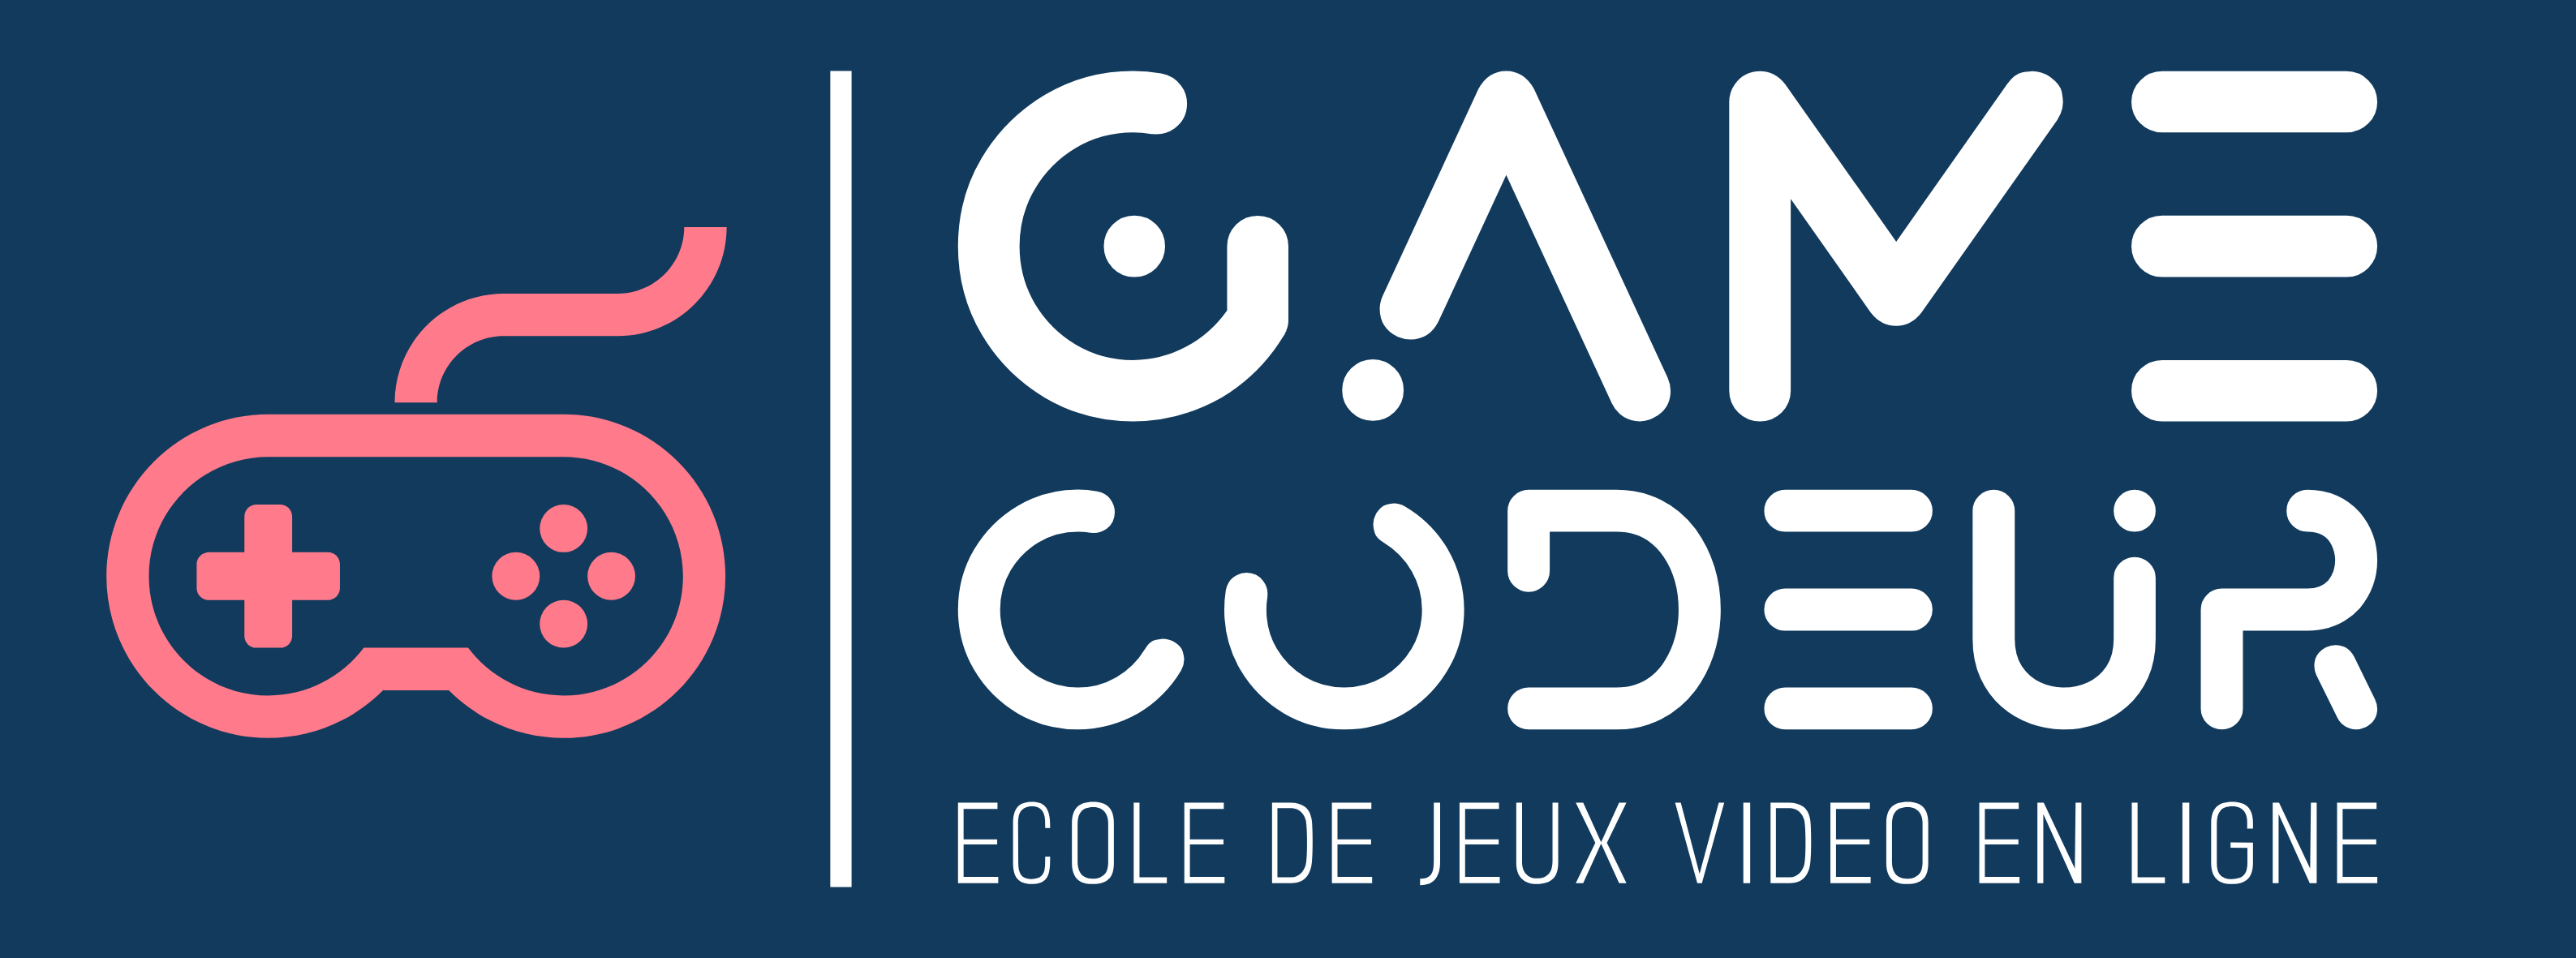 Gamecodeur – L'école de jeux vidéo en ligne